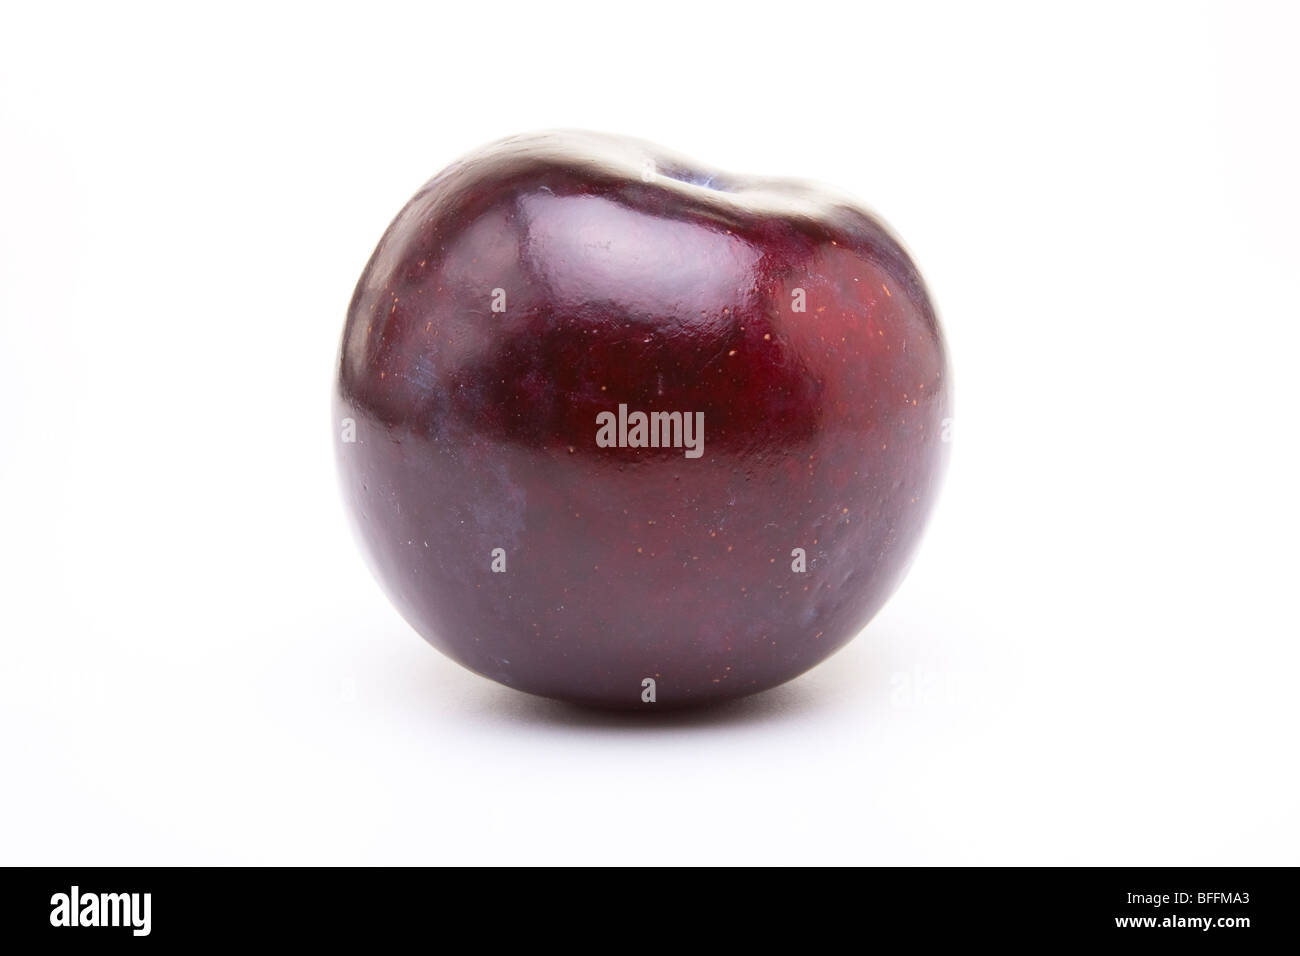 Shiny purple plum isolated against white background. Stock Photo